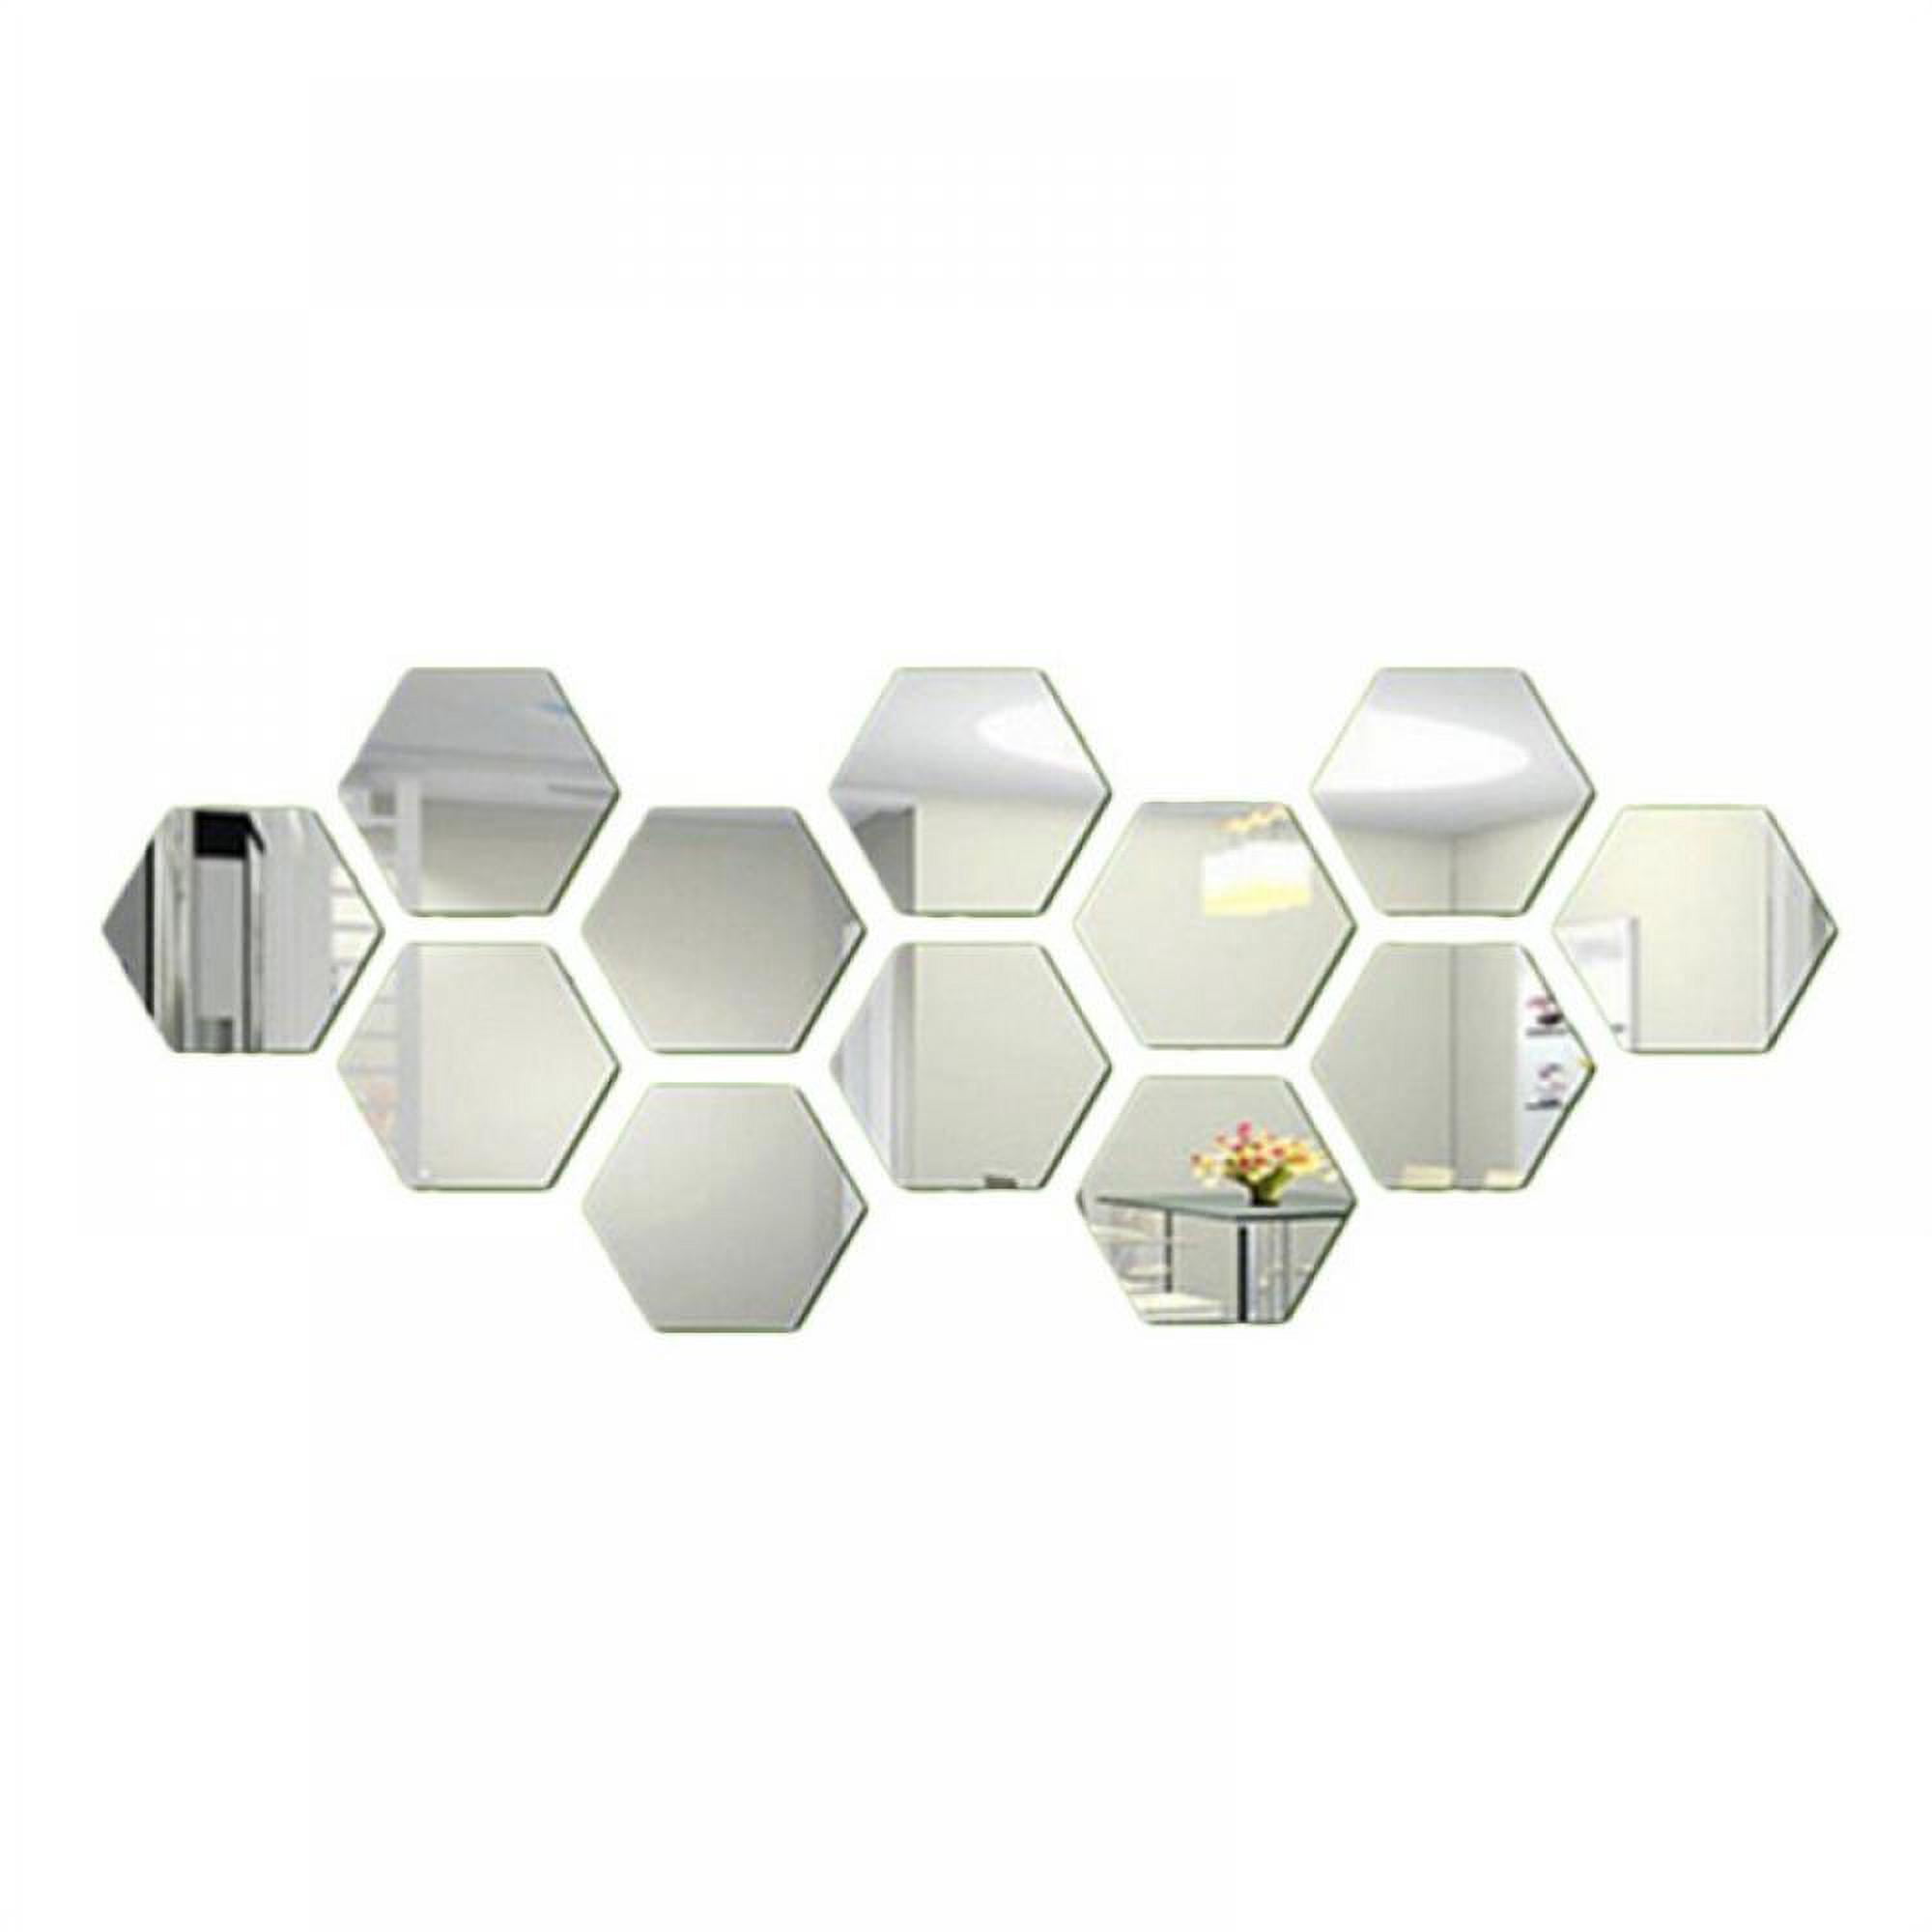 Hexagon Mirror Mosaic Tiles Hexagonal Mirror Pieces for Craft